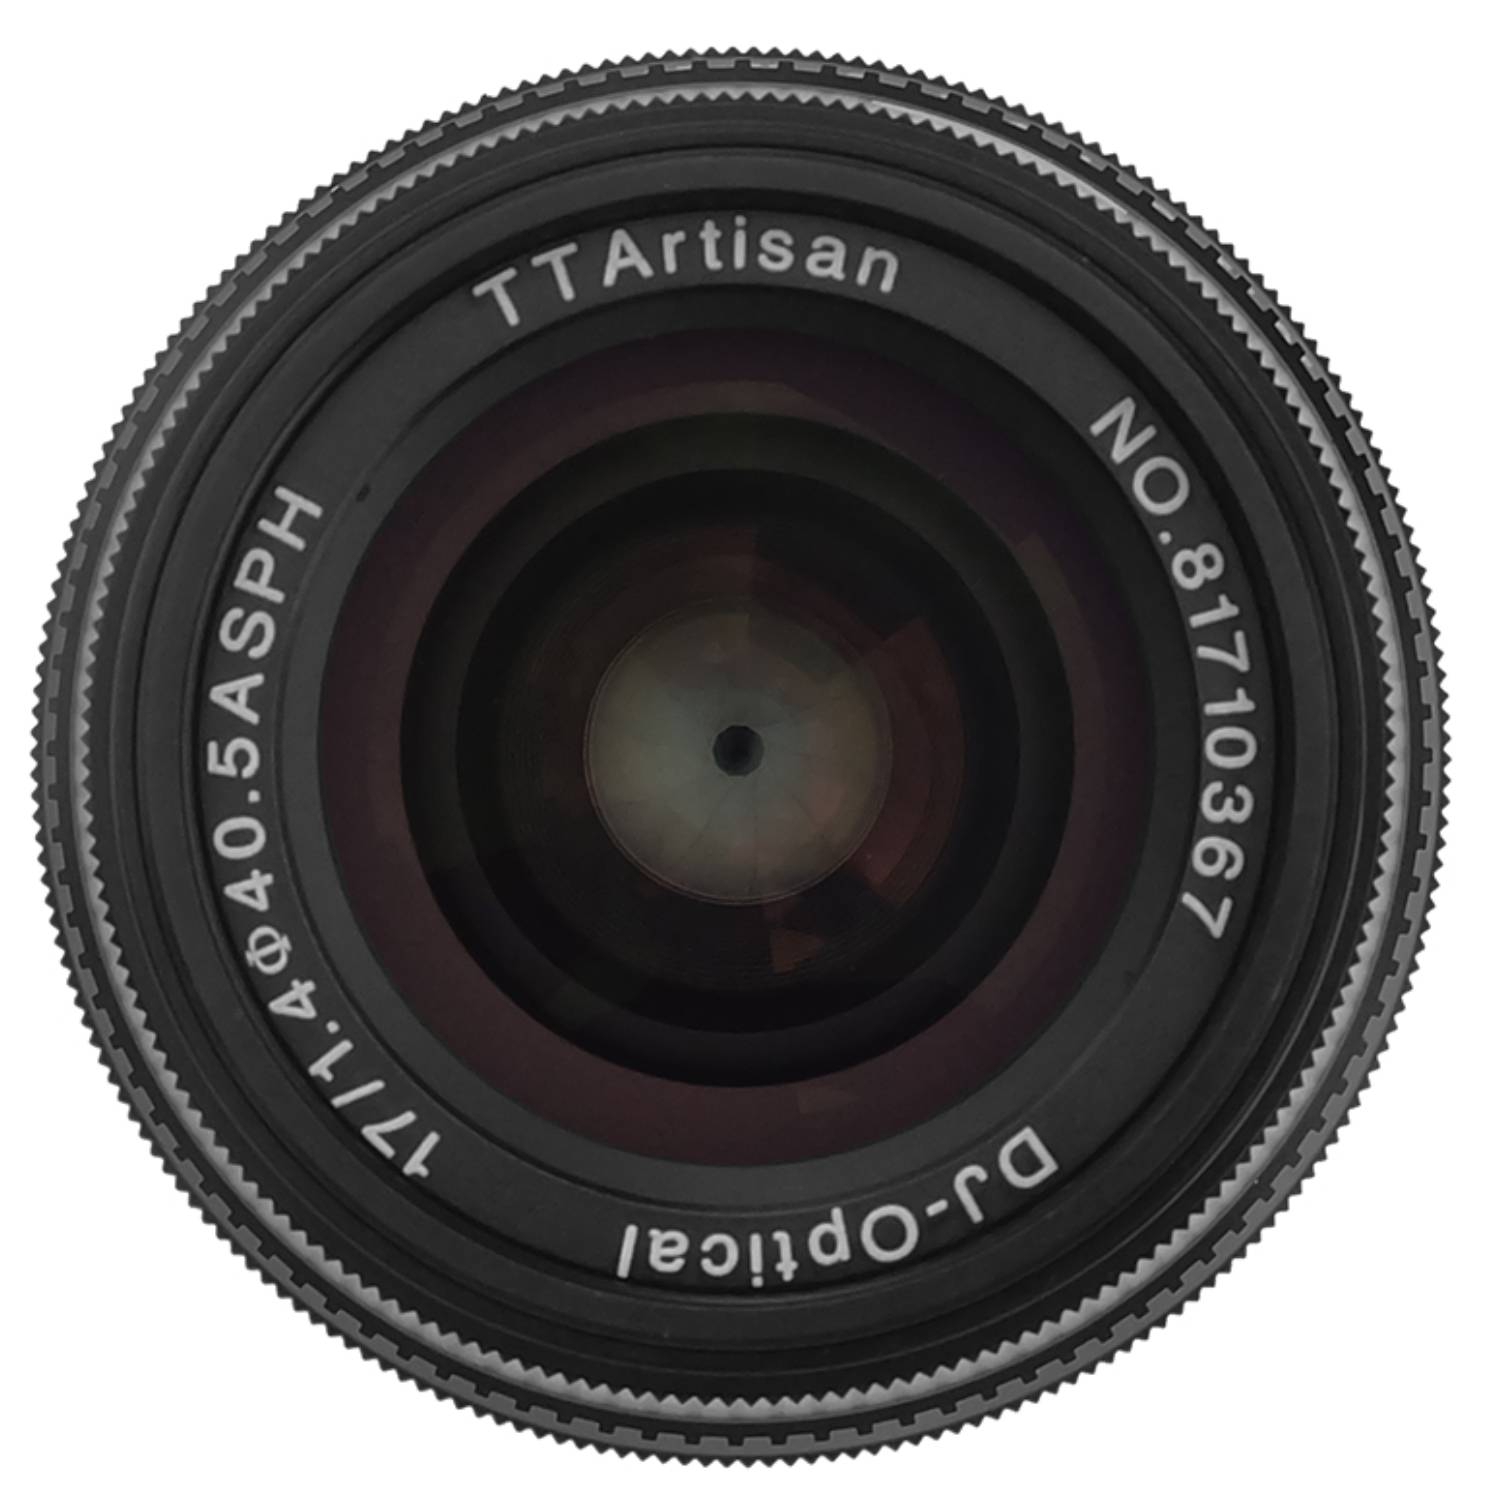 TTArtisan 17mm 1:1,4 für Nikon Z